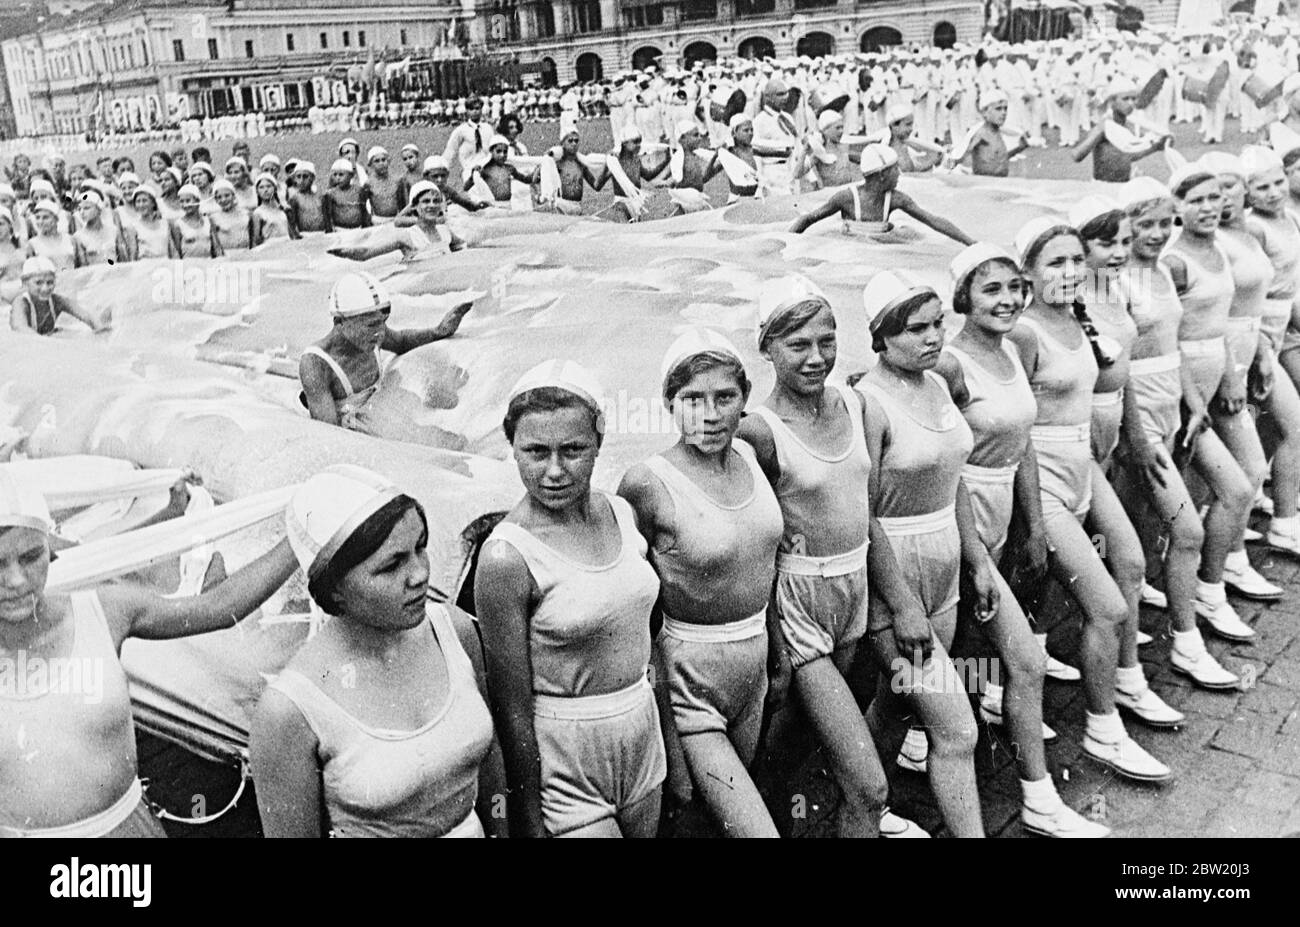 Schulkinder schwimmen in einer klugen Darstellung eines Schwimmbades, das über den Roten Platz getragen wurde, wo sie 40,000 Athleten aus den 11 Republiken, die die Sowjetunion bilden, zusammenschlossen, marschierten triumphierend über den Roten Platz Moskau, Den 20. Jahrestag der Revolution und deren Inbetriebnahme der neuen Stalin-Verfassung zu feiern. In der Parade waren Vertreter aller Arten von Sport von d Gymnastik zu Jäger mit Adler. 15 Juli 1937[?] Stockfoto